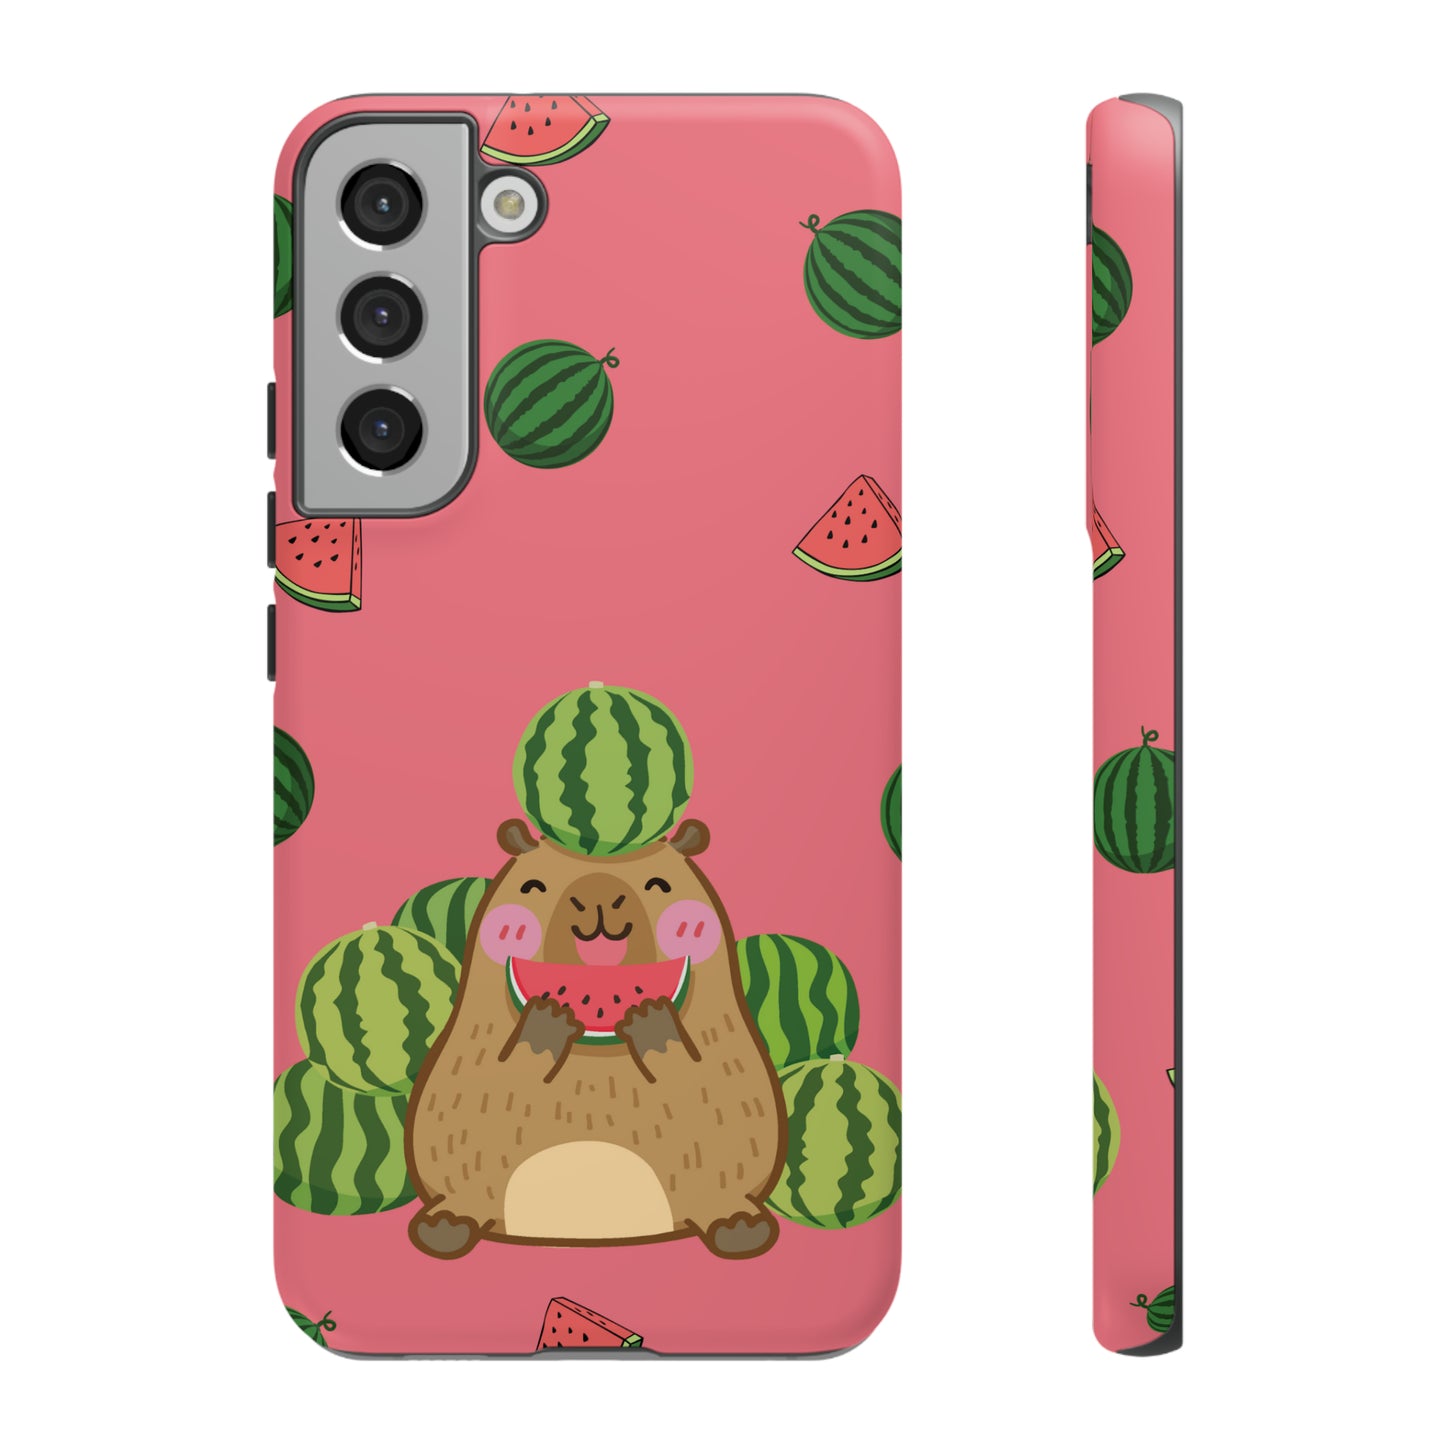 Capybara Watermelon Tough Phone Cases